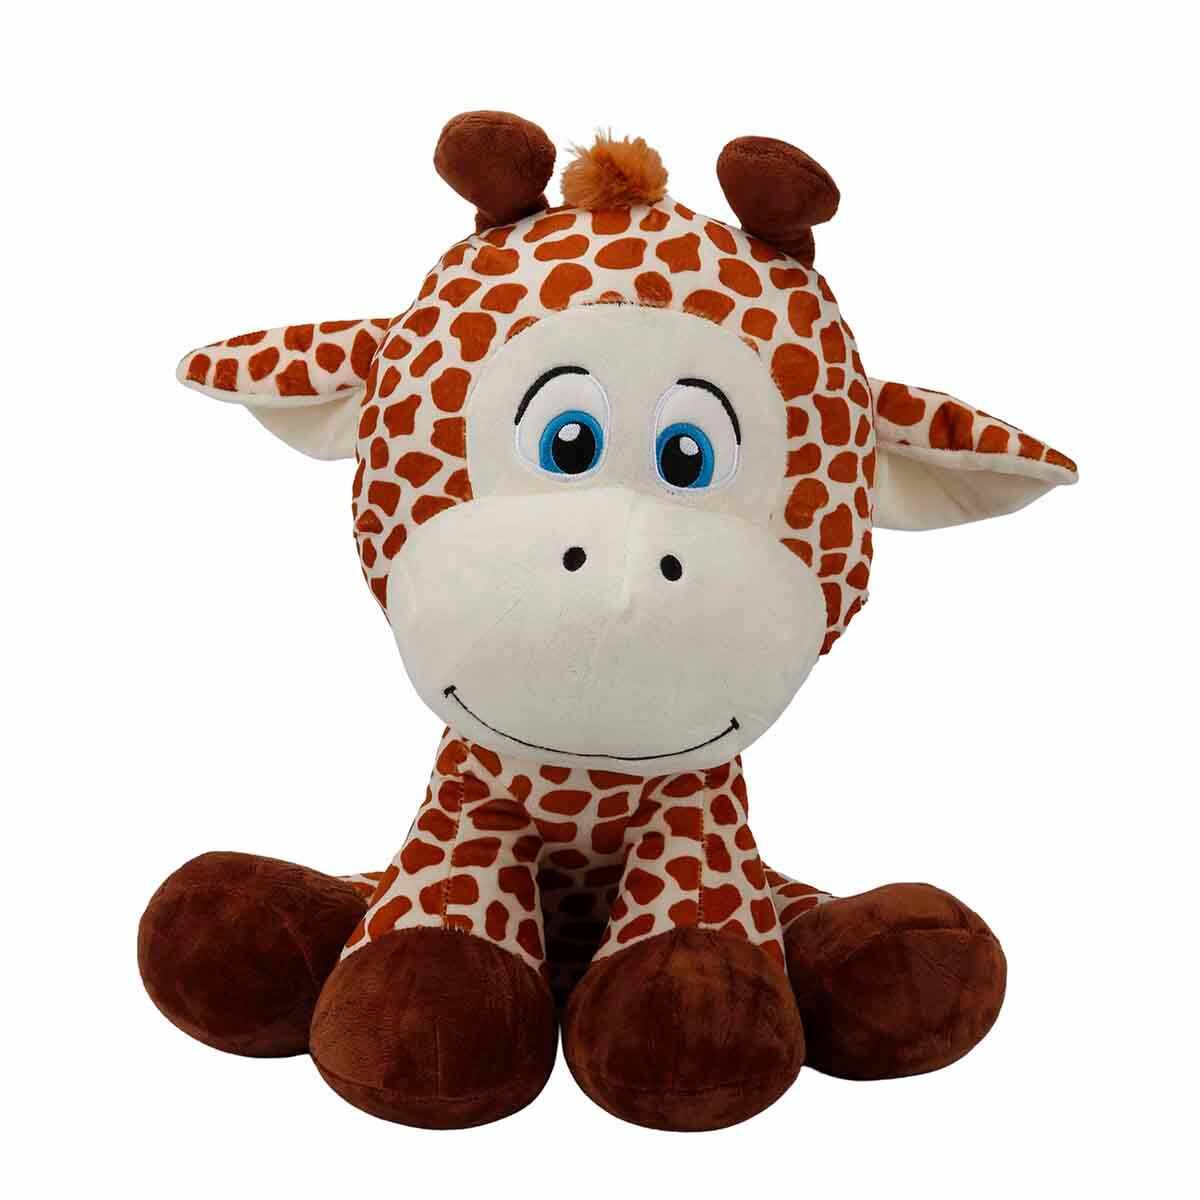 Jucarie de plus, Puffy Friends, Girafa, 35 cm